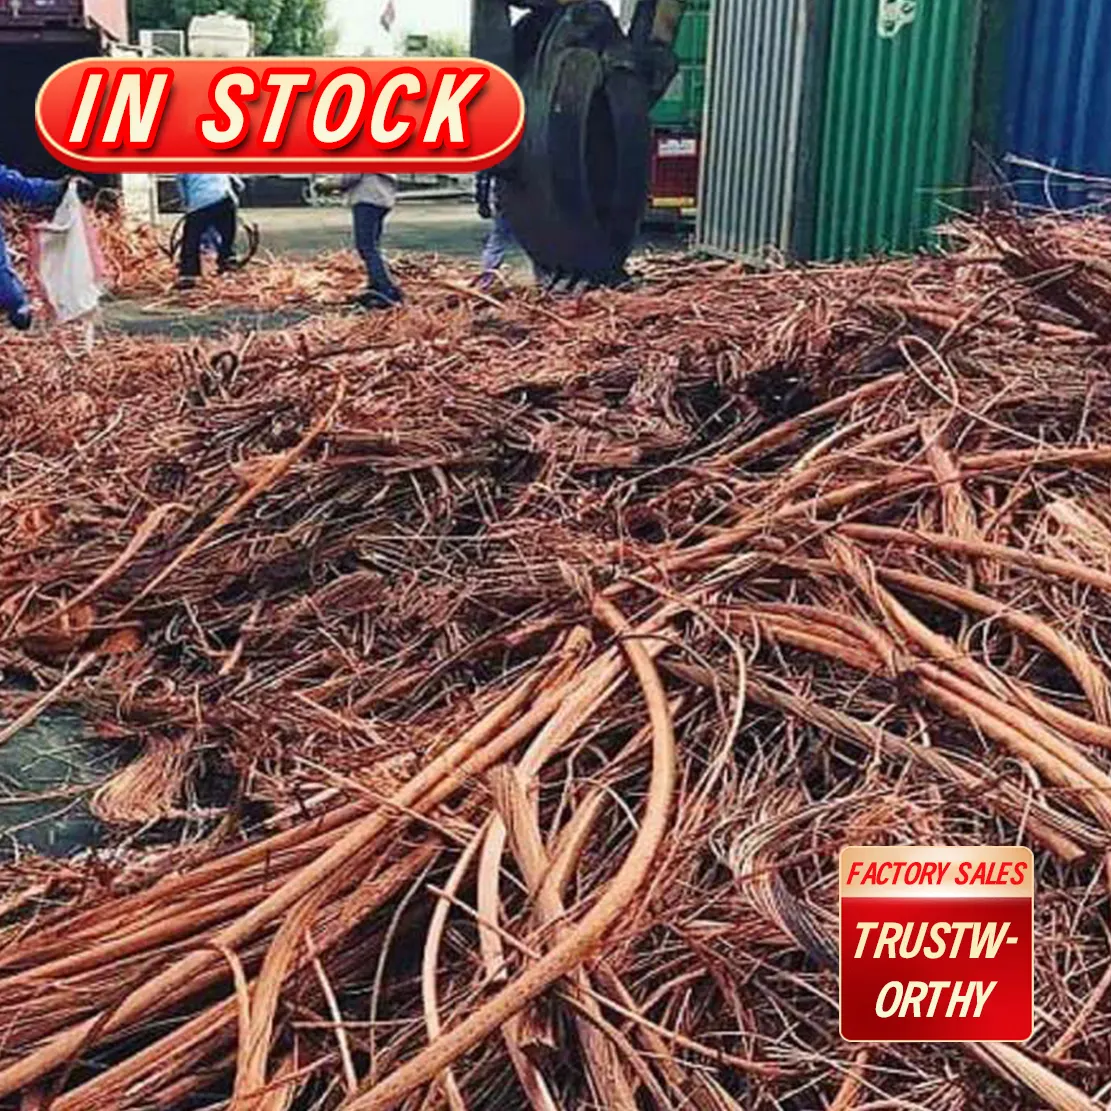 Precio bajo al por mayor de chatarra de alambre de cobre especial Venta caliente de fábrica directamente chatarra de alambre de cobre de pureza